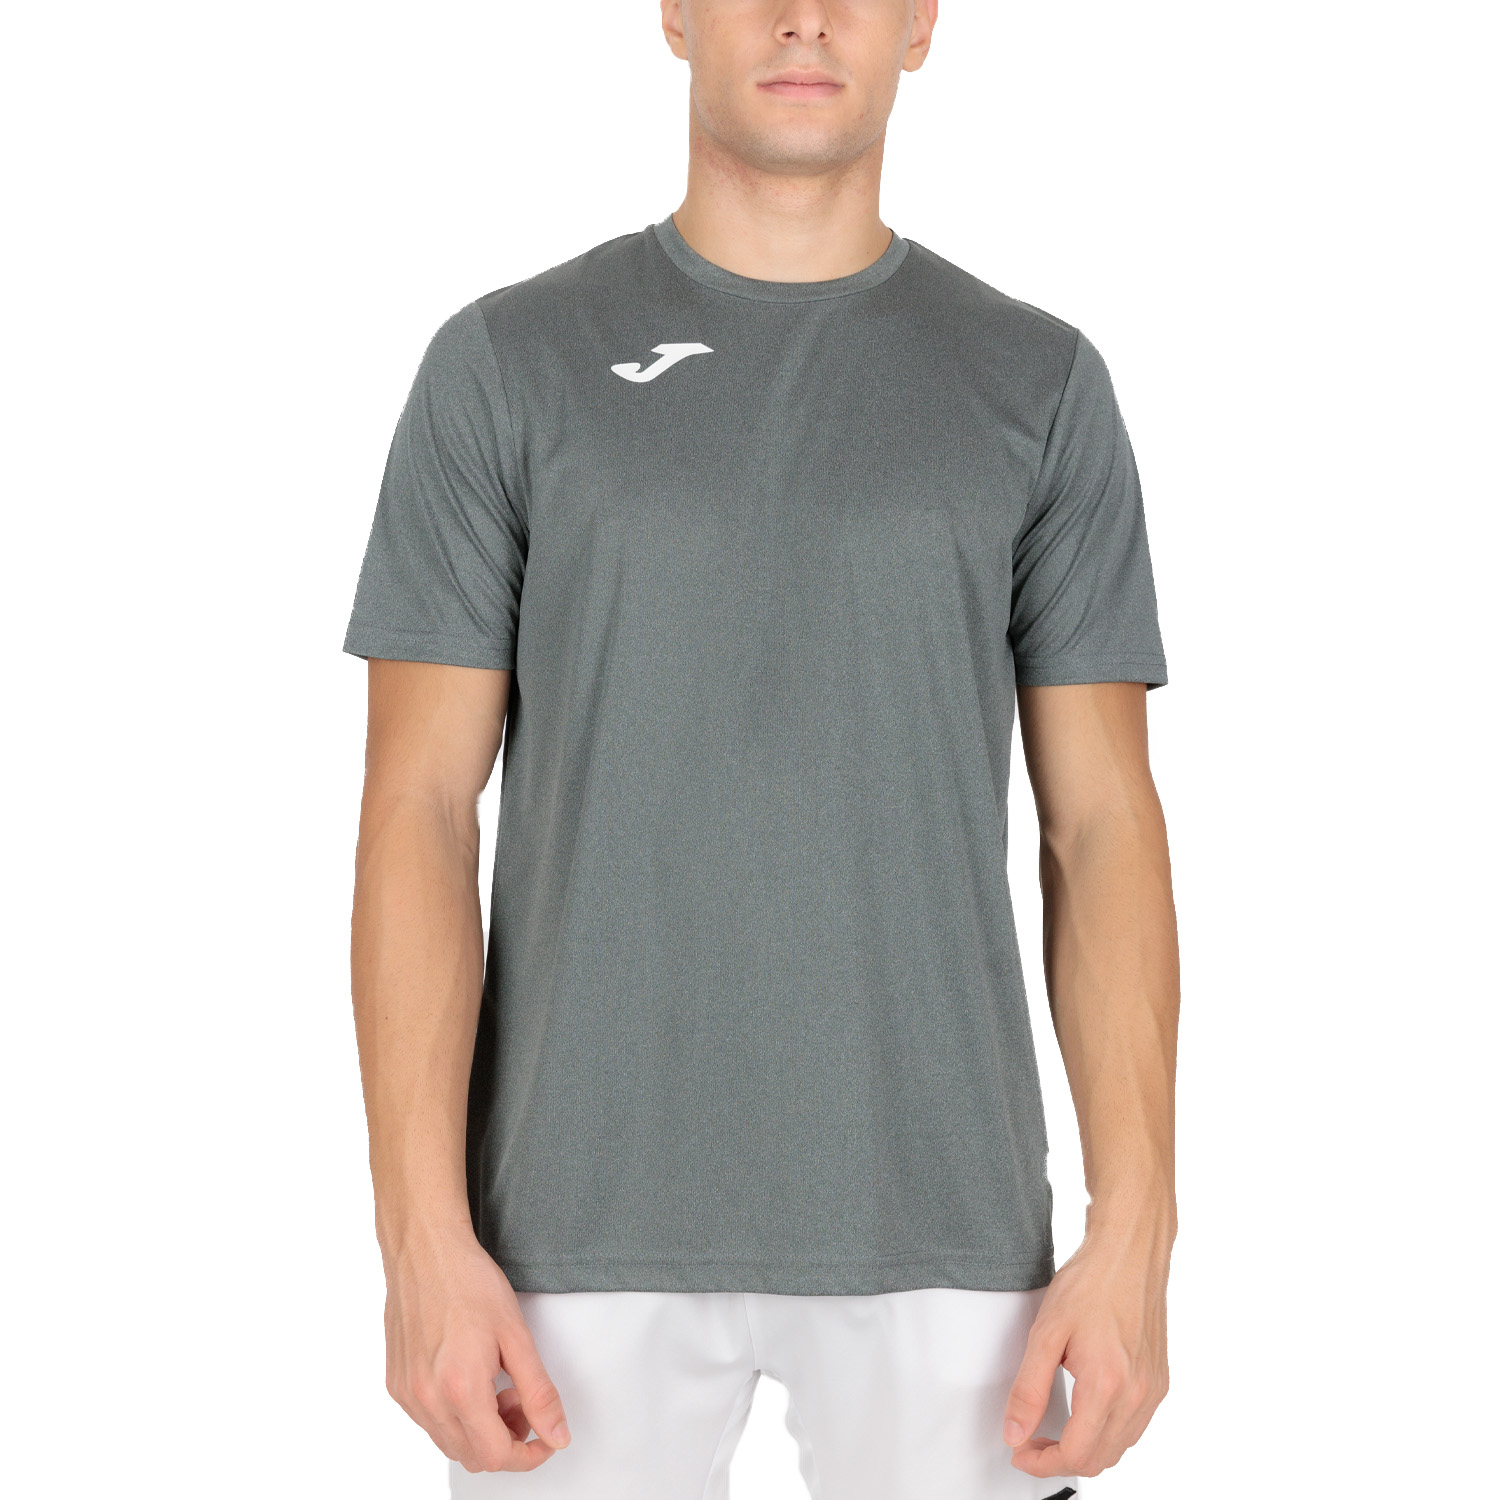 Joma Combi T-Shirt - Dark Grey/White